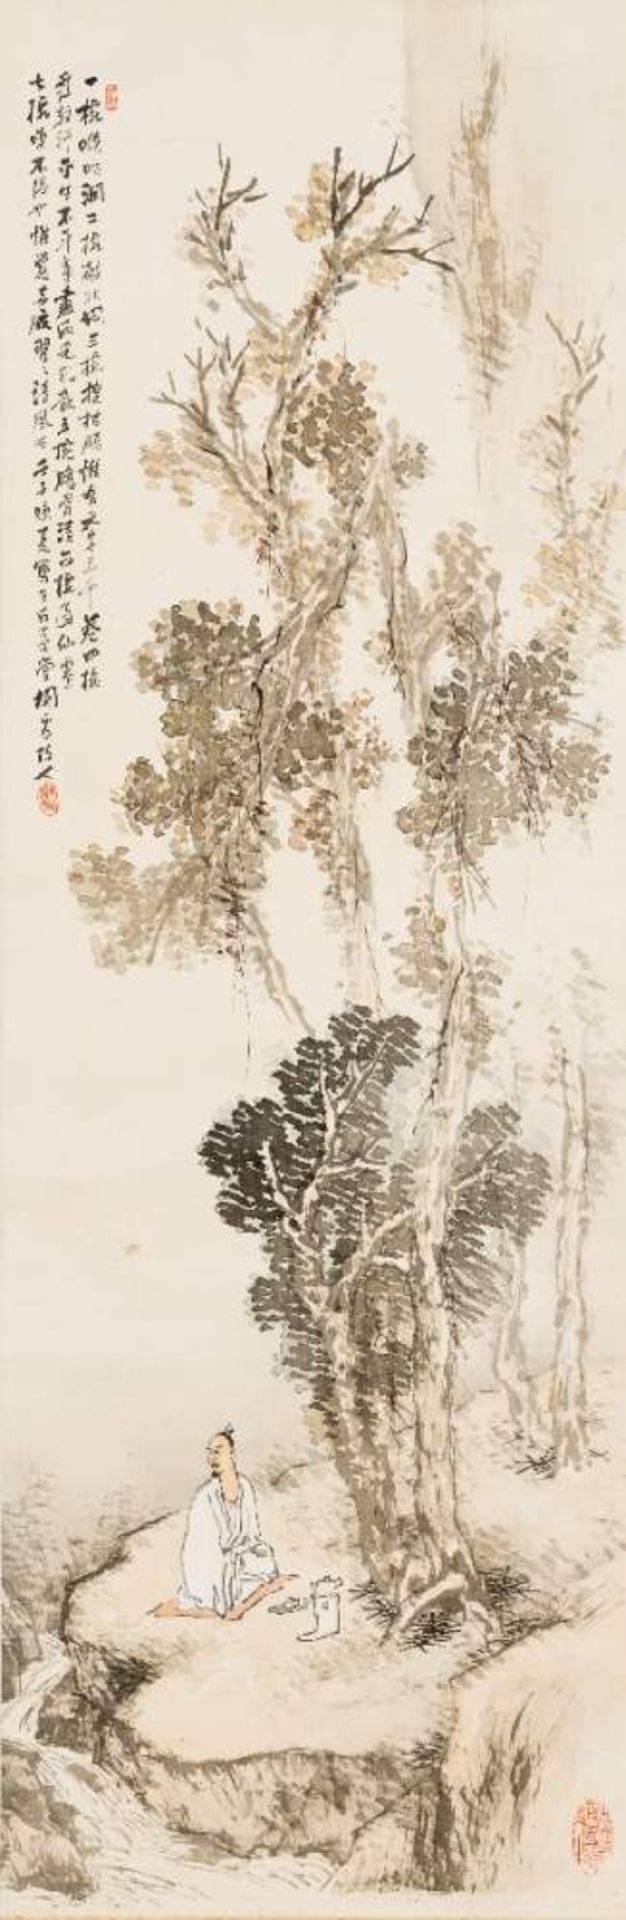 HASHIMOTO KANSETSU (1883-1945): GENIESSER AM BERGBACHTusche und Farben auf Papier. Japan, 1. H.